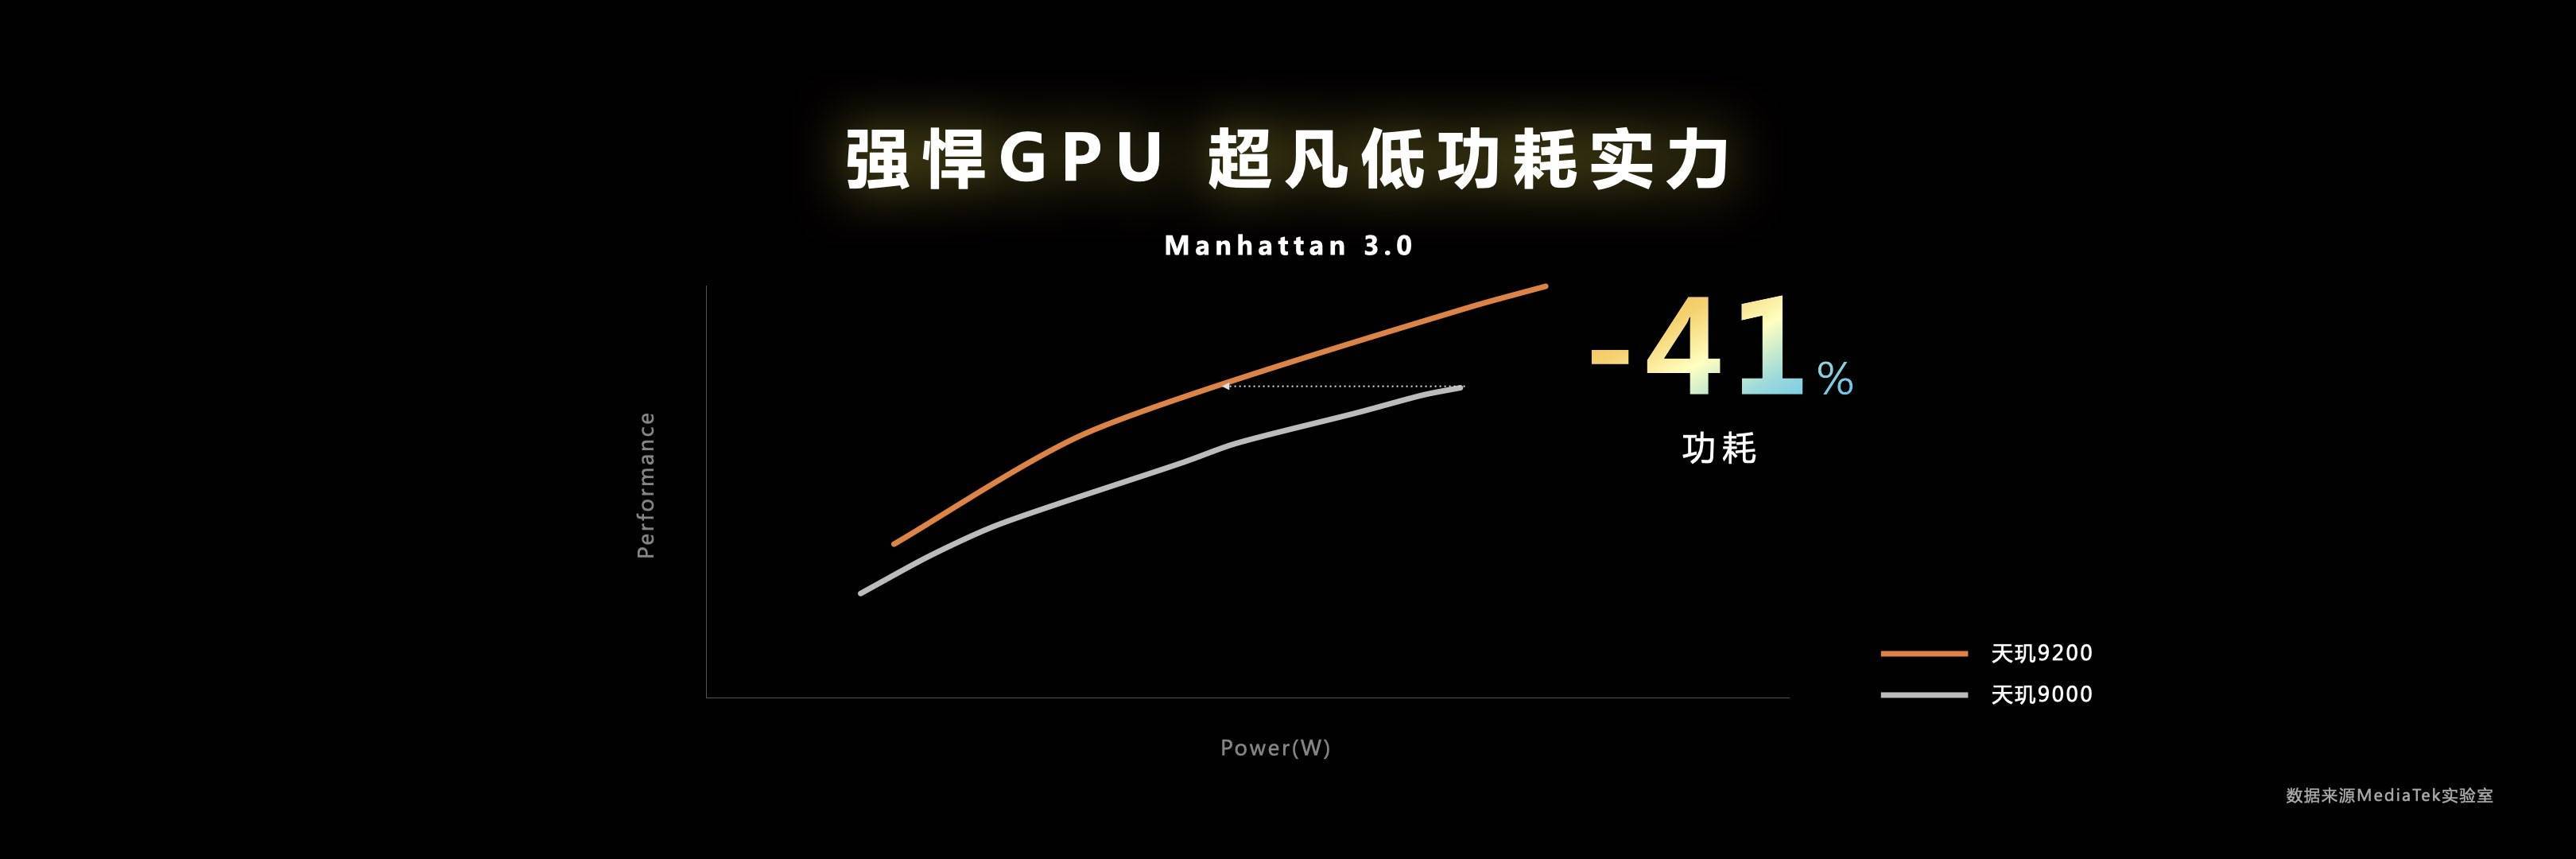 强悍GPU加上移动端硬件光追，联发科靠硬核技术站稳高端芯片